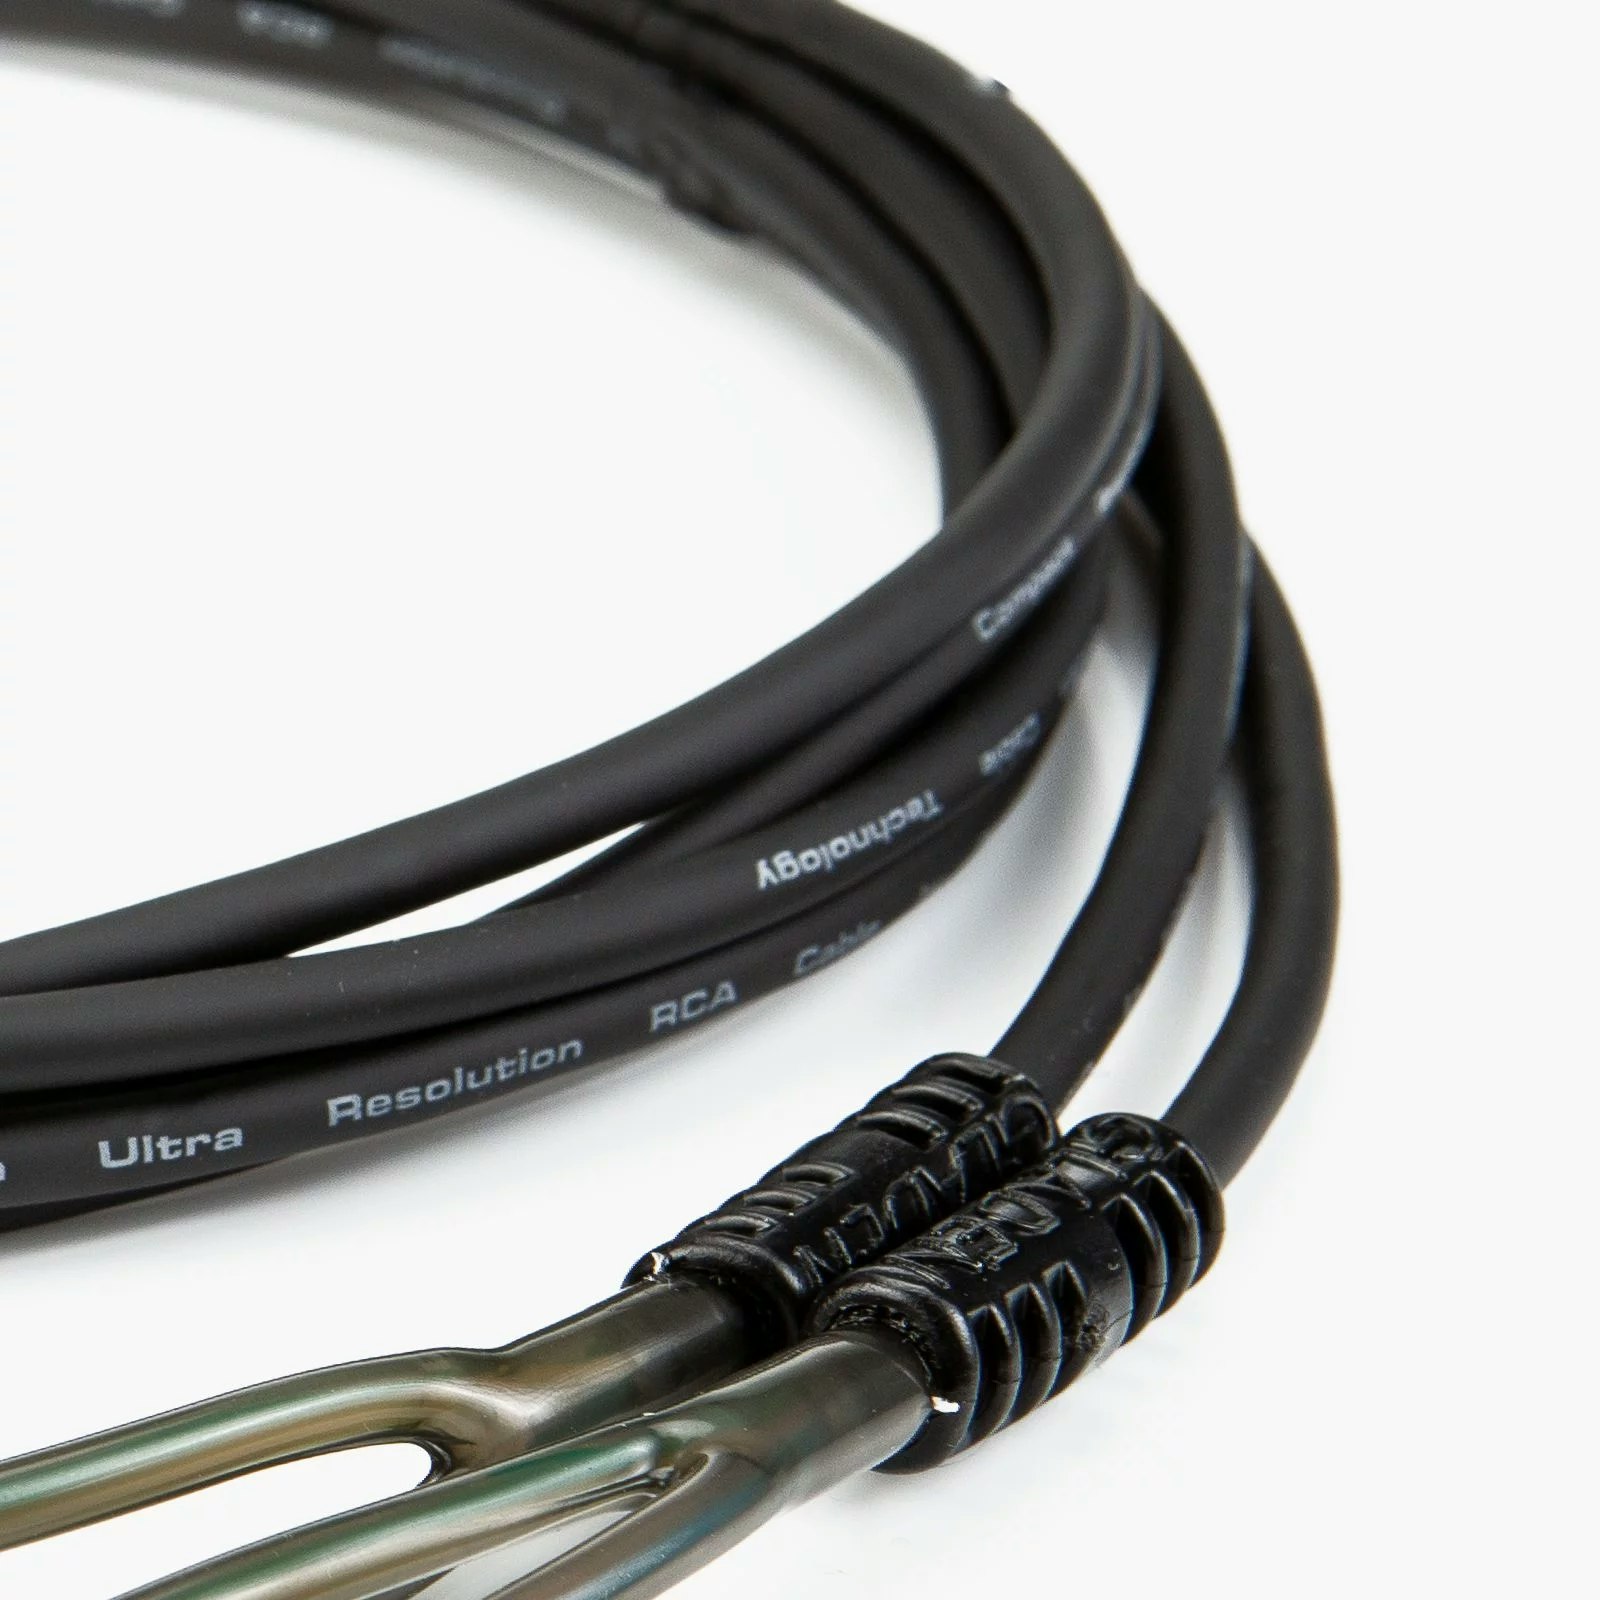 Gladen ECO 0.75m RCA-kabel